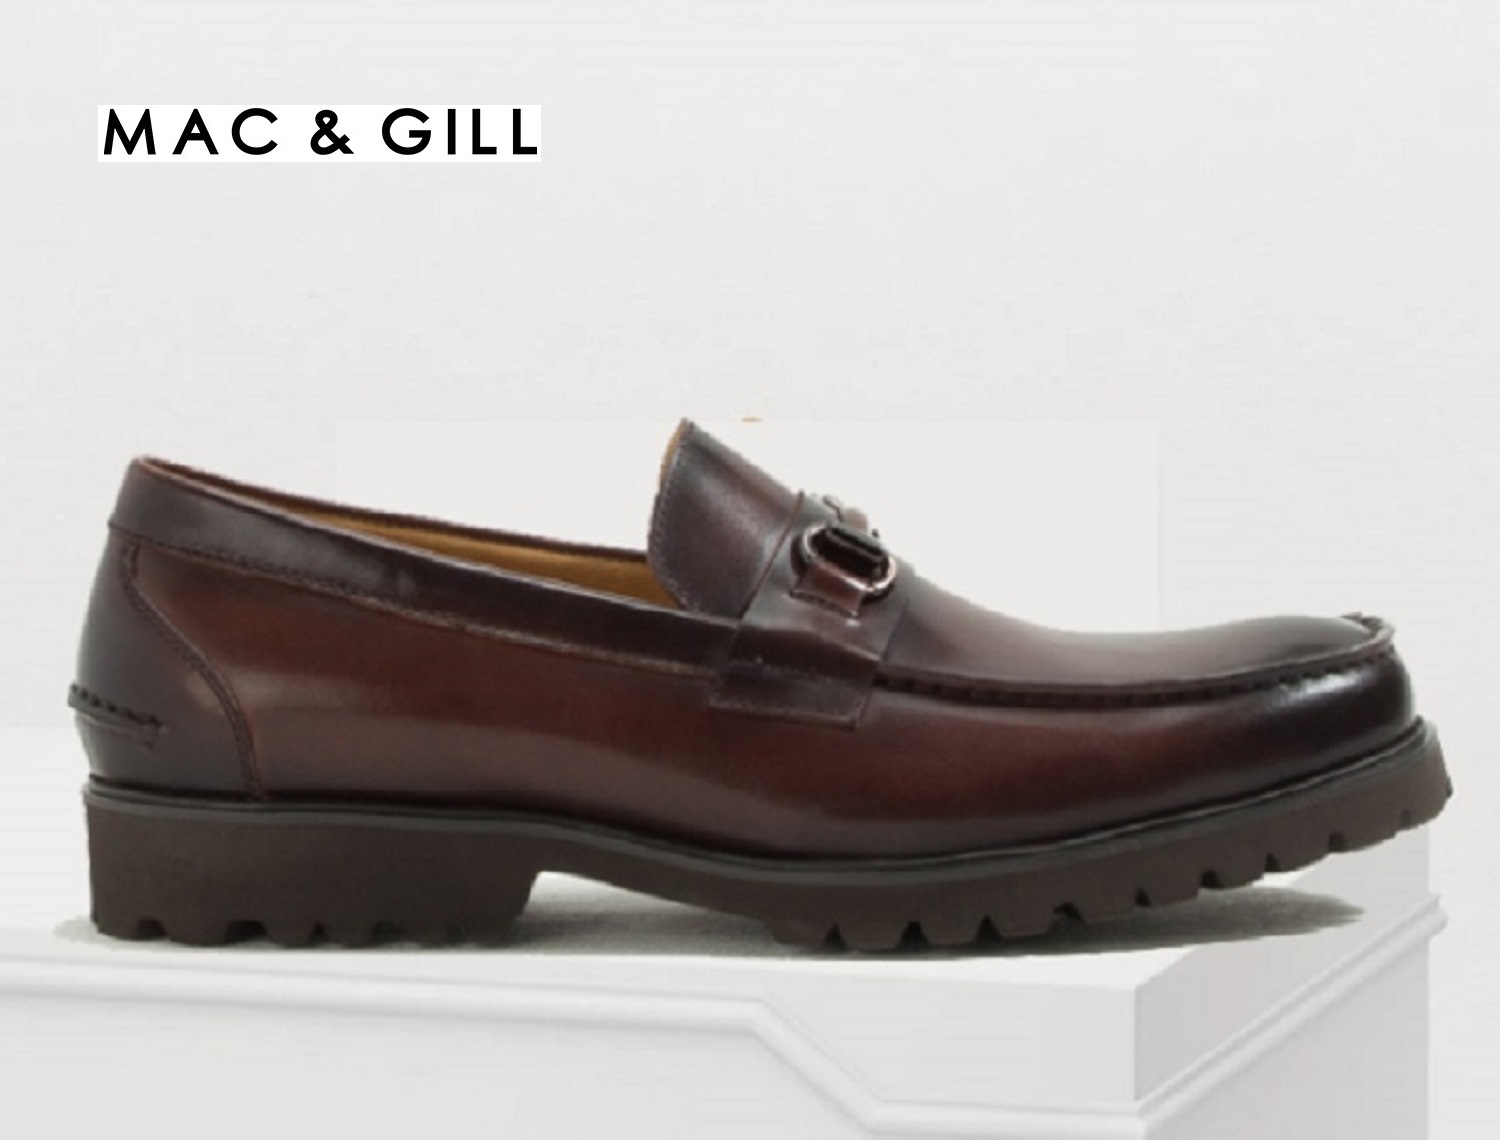 รองเท้าผู้ชายหนังแท้สวมใส่ทางการคลาสสิก Premium Original Leather MAC&GILL Brown Buckle